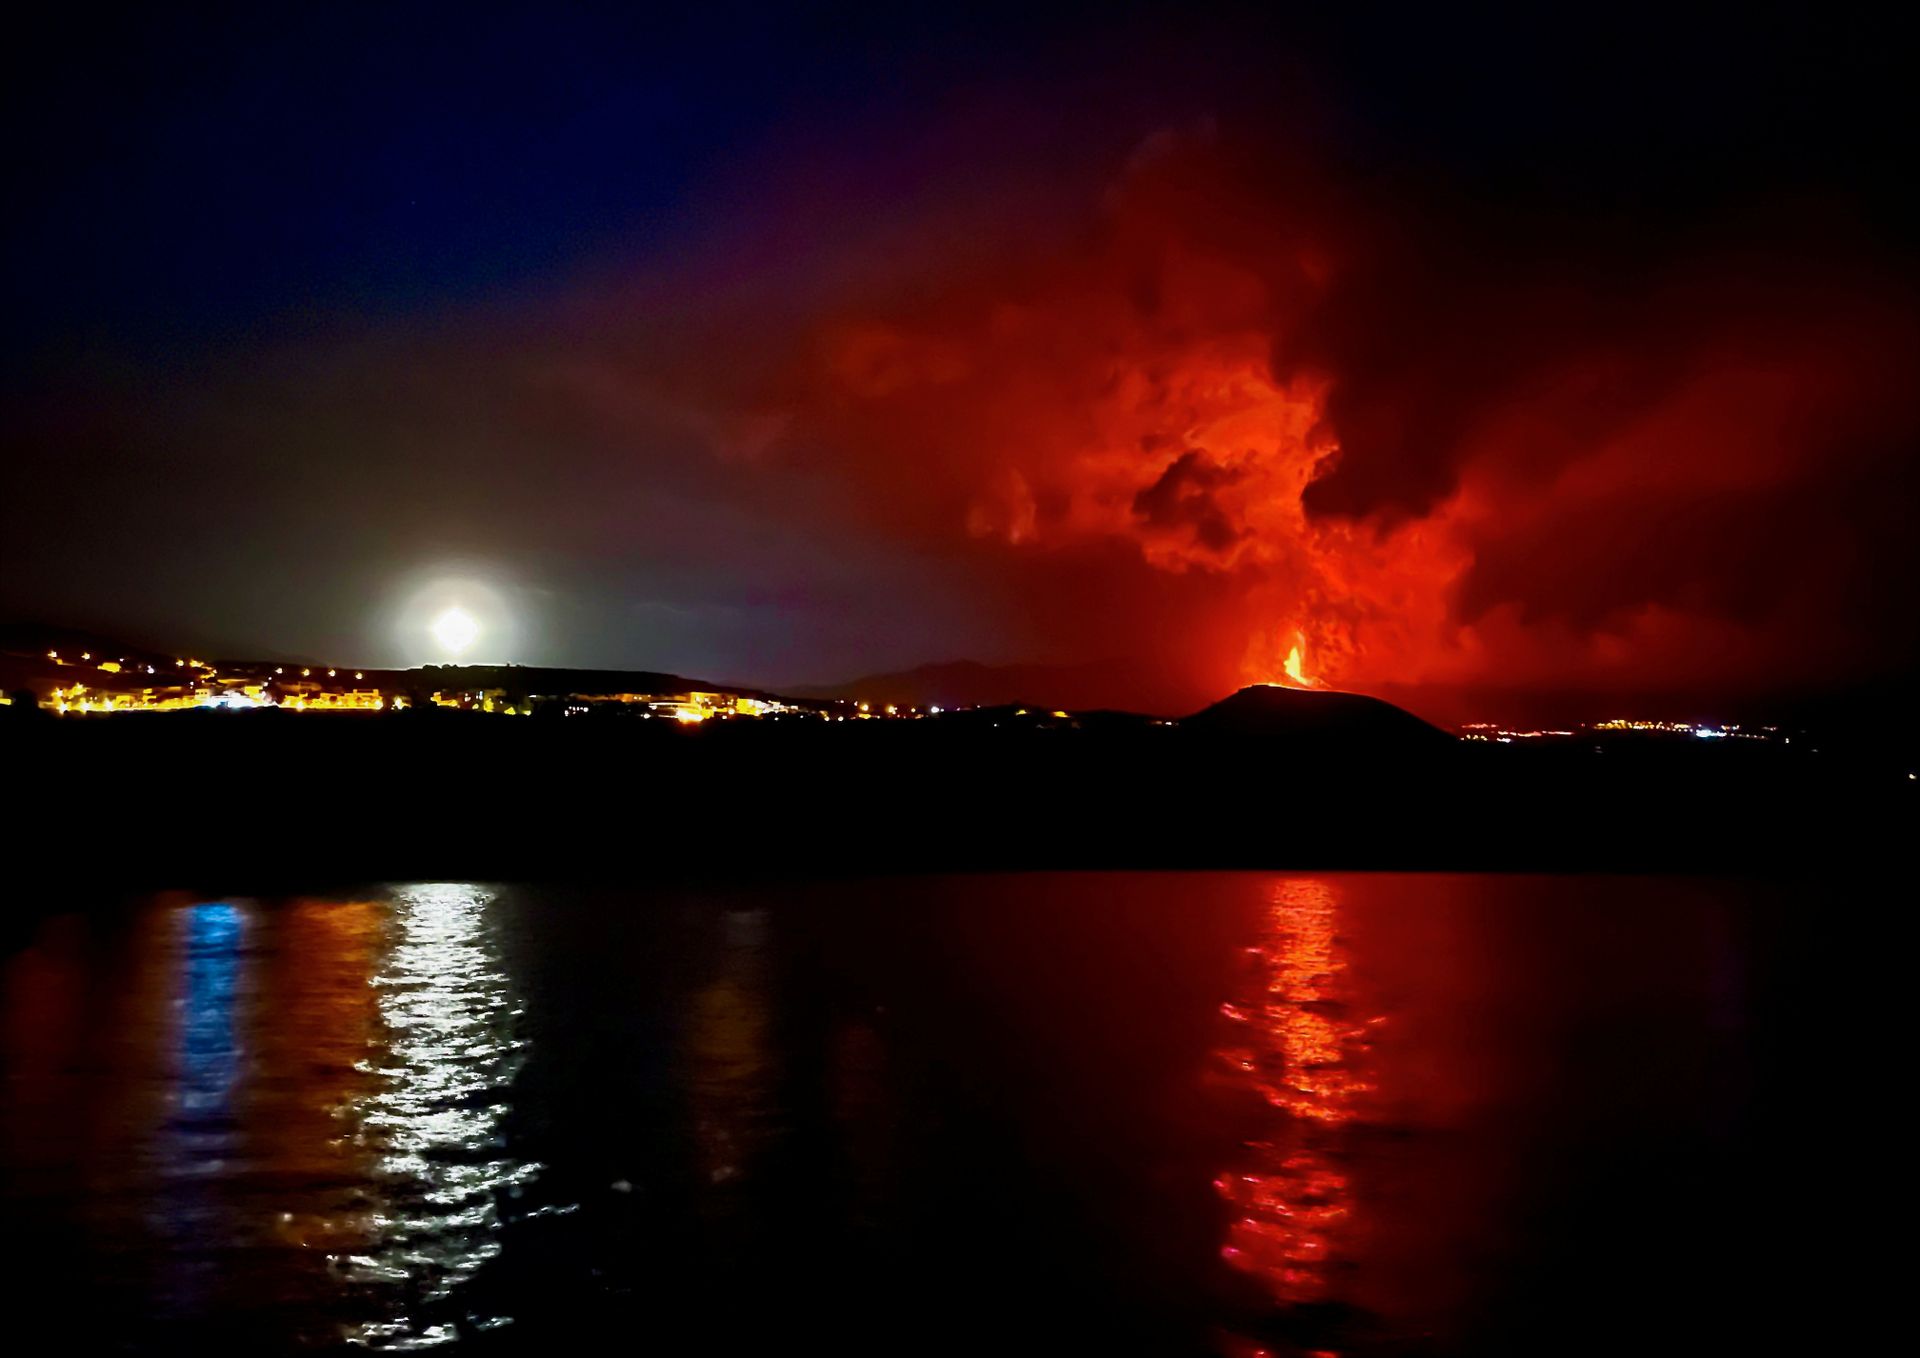 I mørket kan man se et stort vulkanutbrudd.